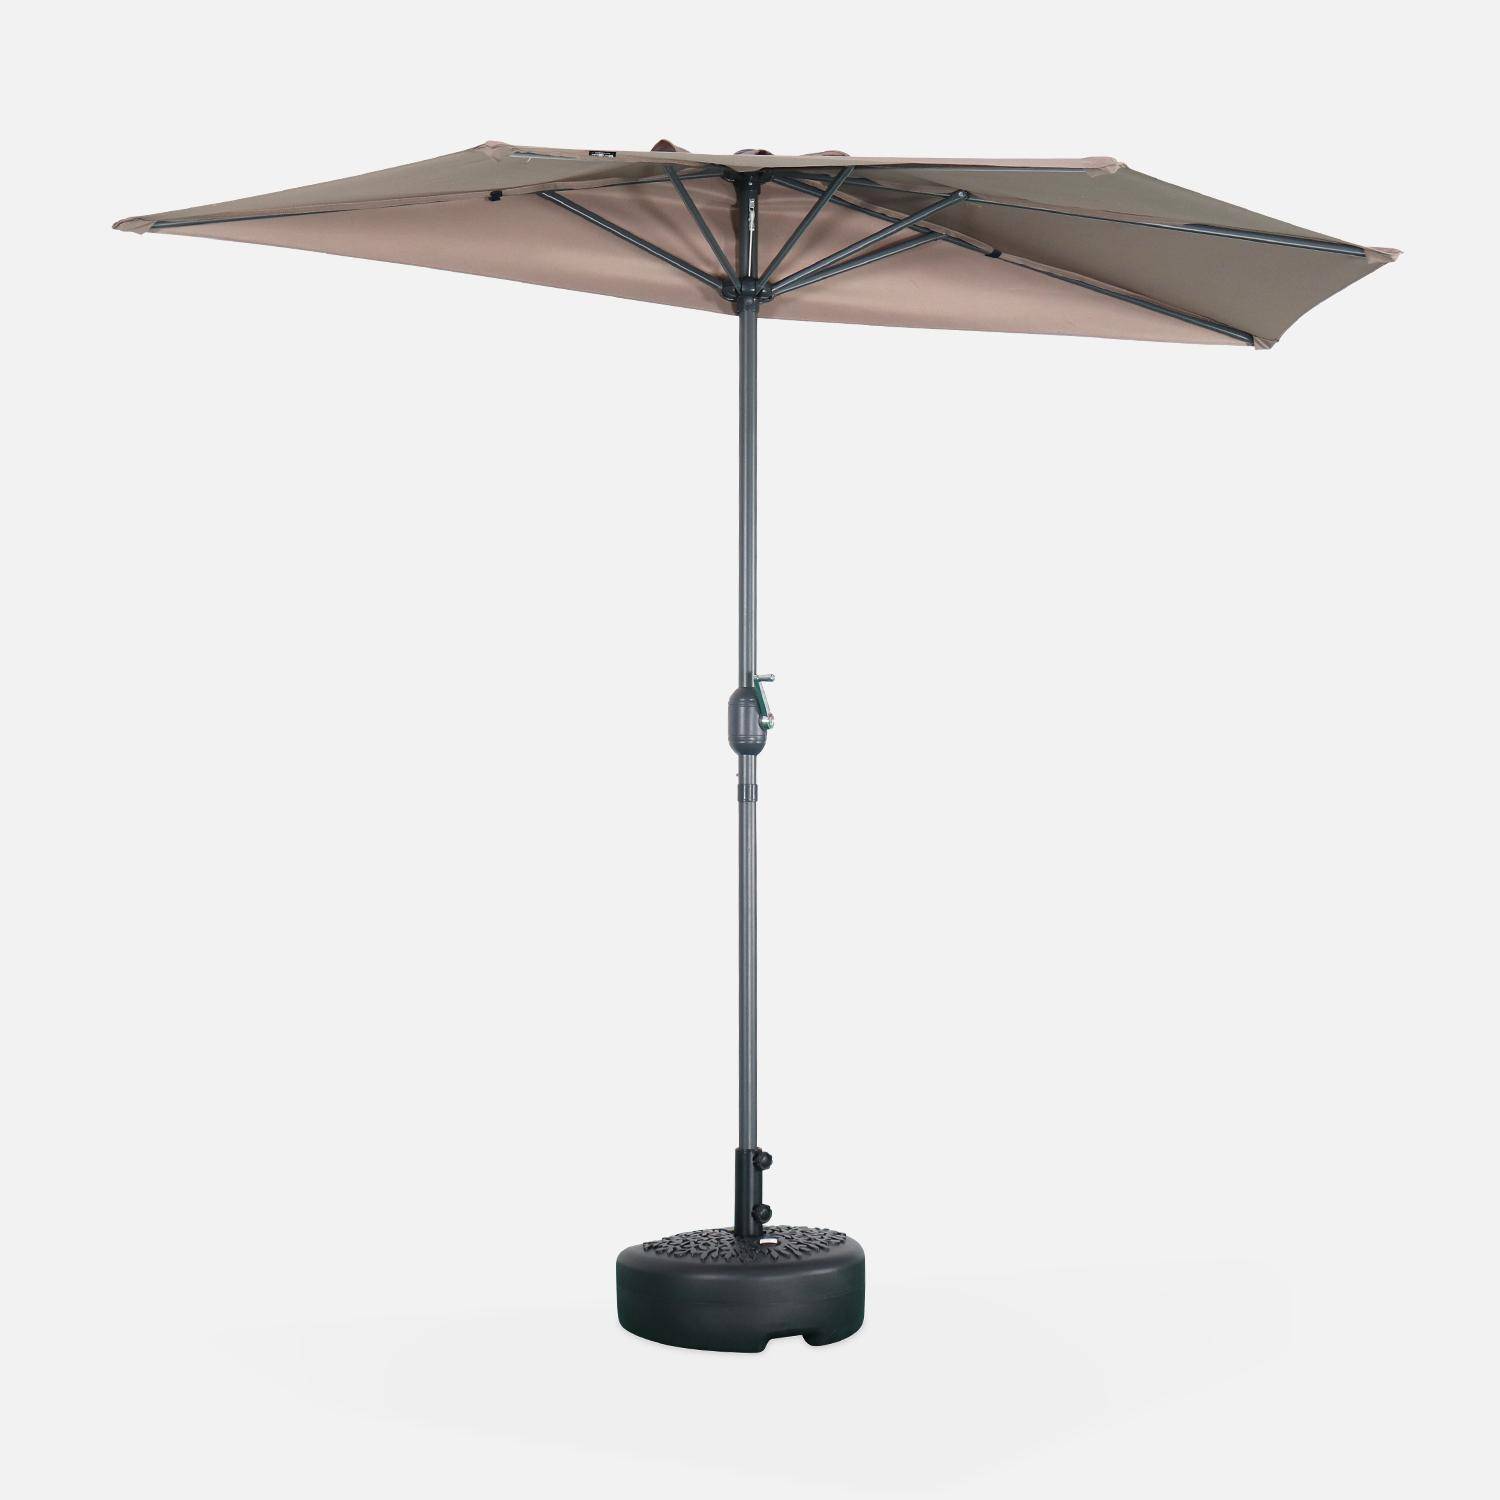  Parasol para balcón Ø250cm  – CALVI – Pequeño parasol recto, mástil en aluminio con manivela, tela color pardo ,sweeek,Photo2